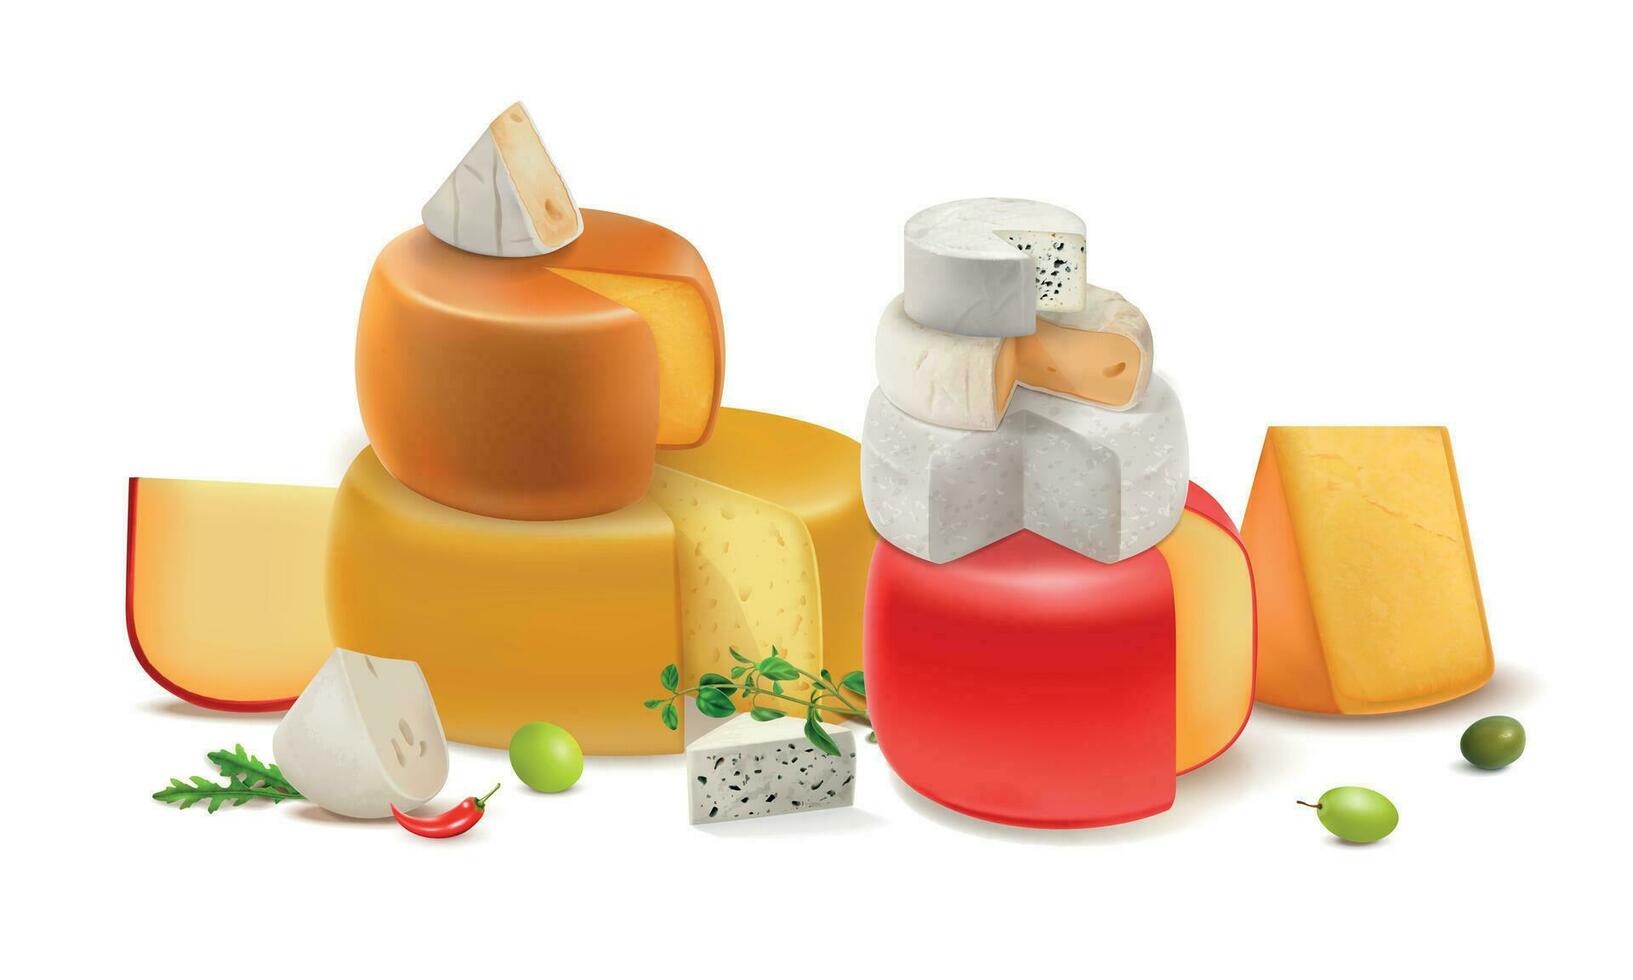 realista queijo colori composição vetor